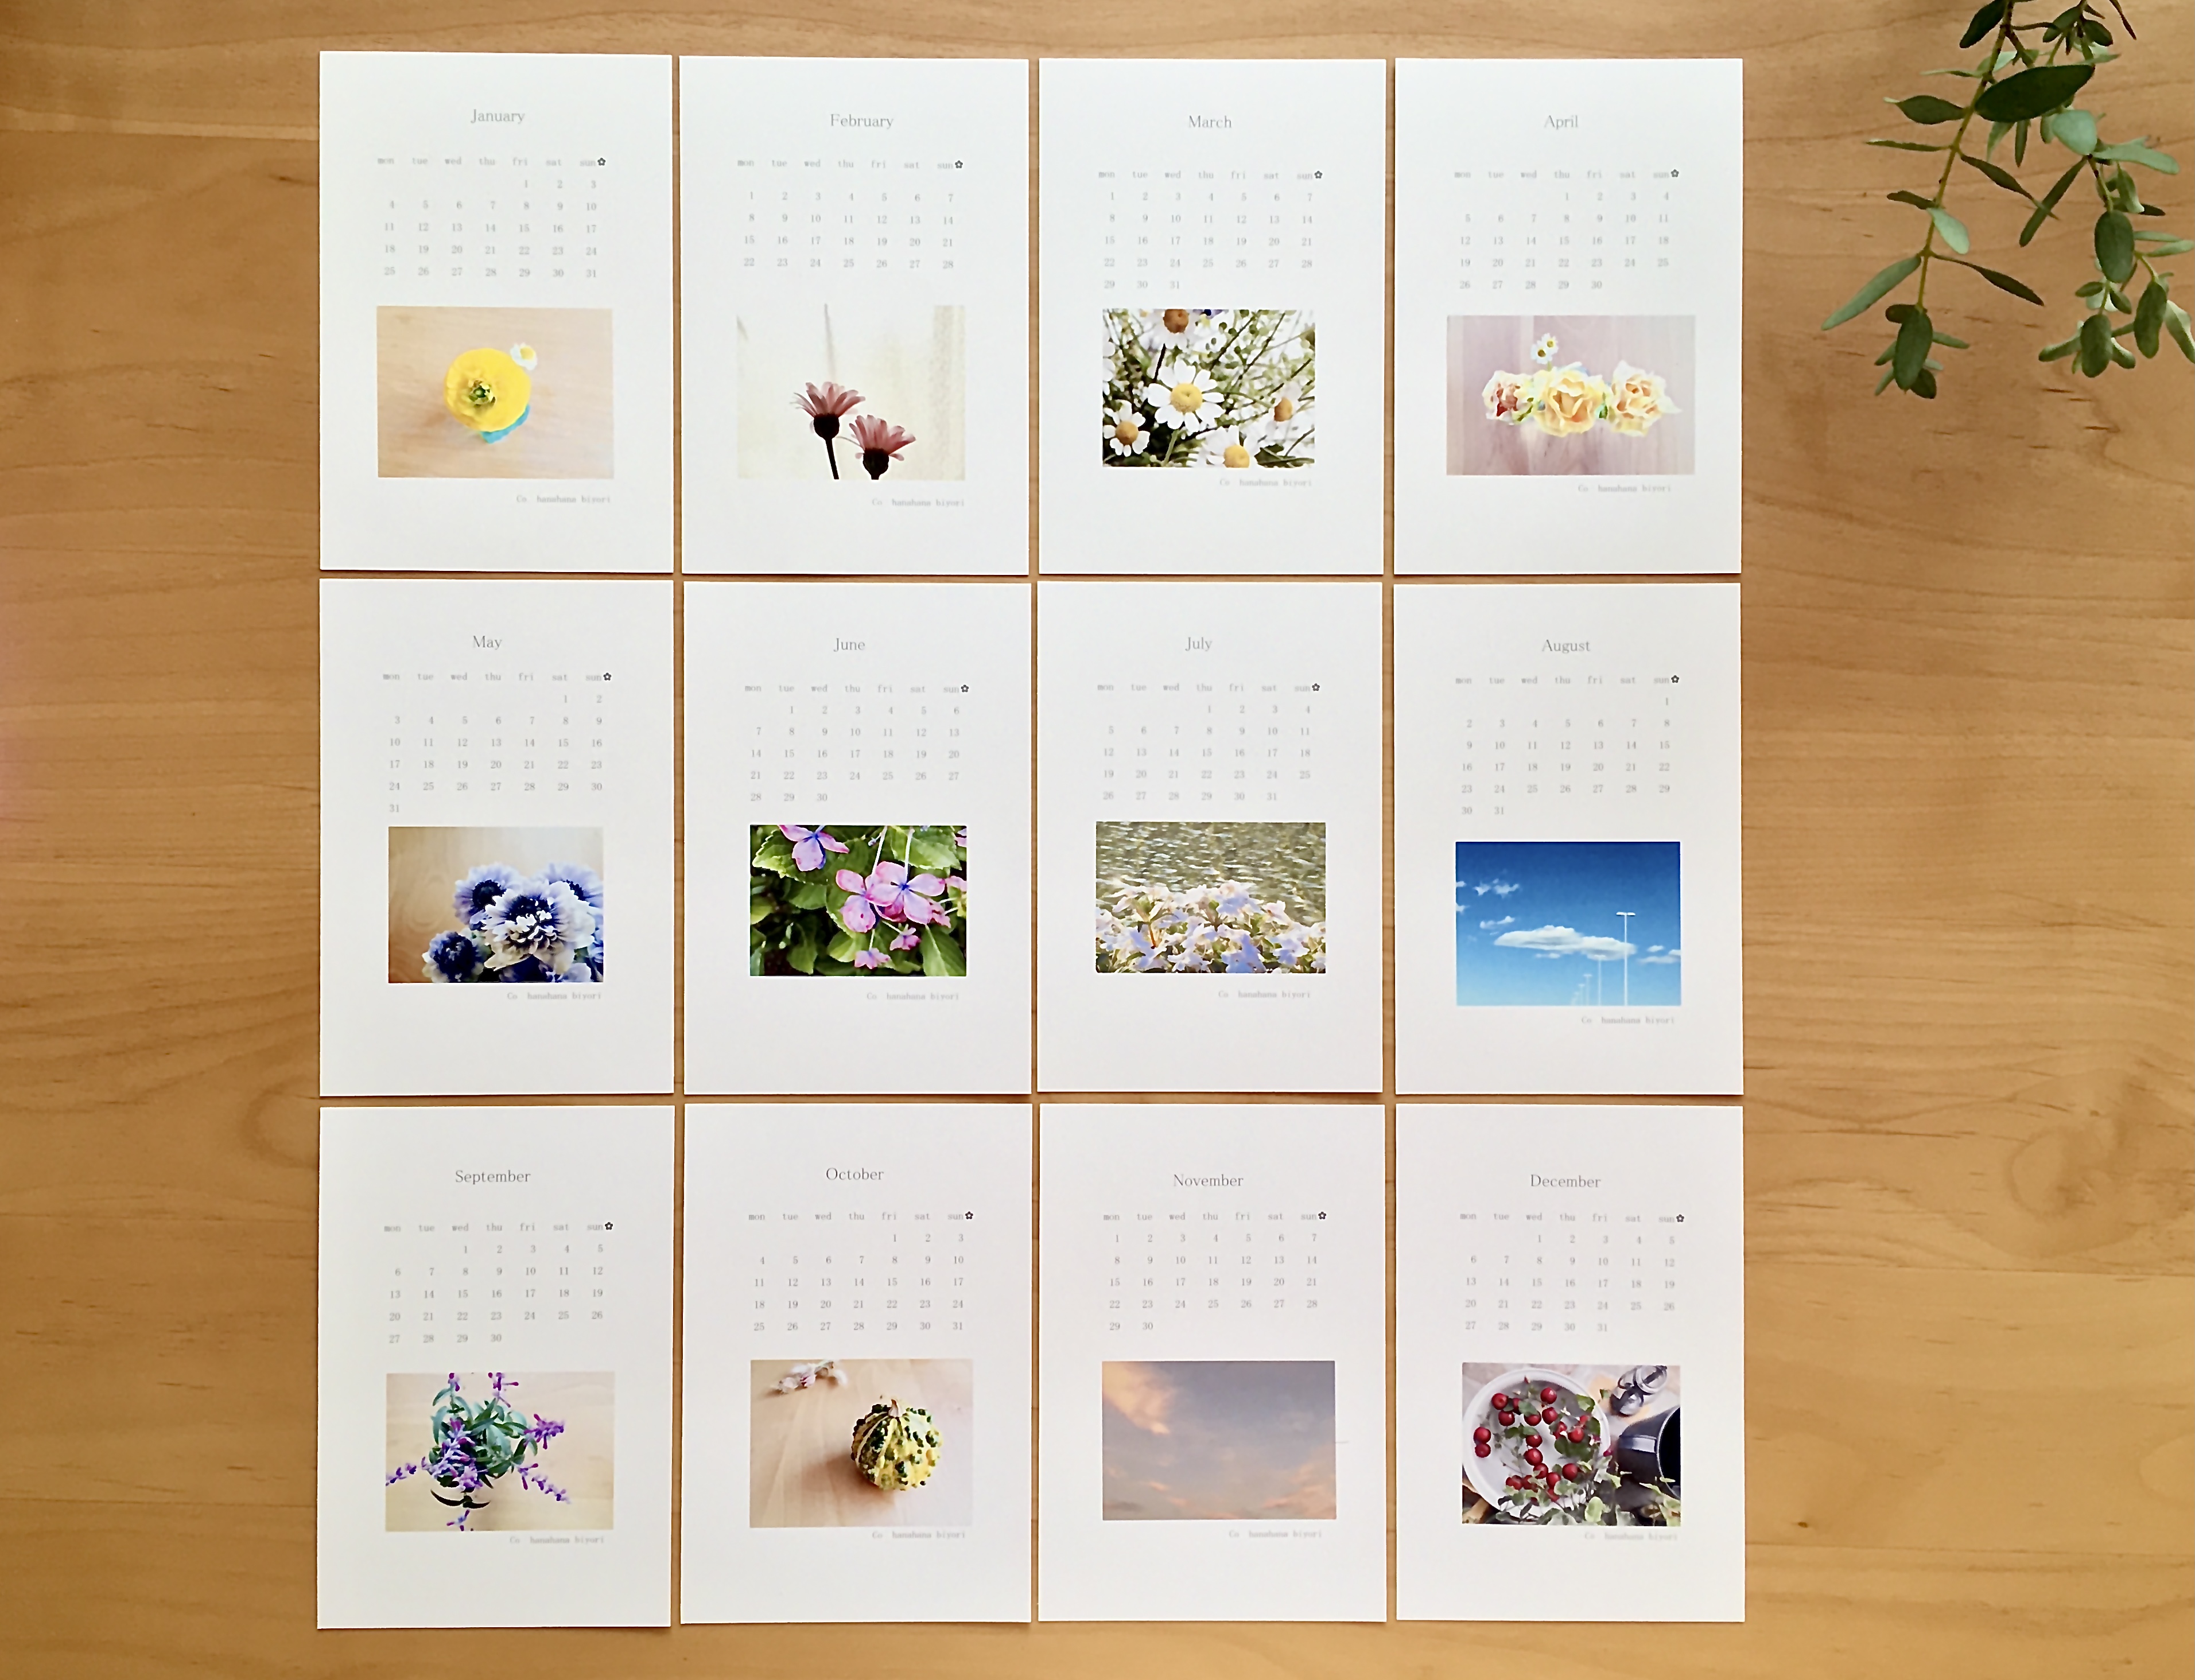 送料無料 21年 カレンダー ポストカードサイズ Iichi ハンドメイド クラフト作品 手仕事品の通販